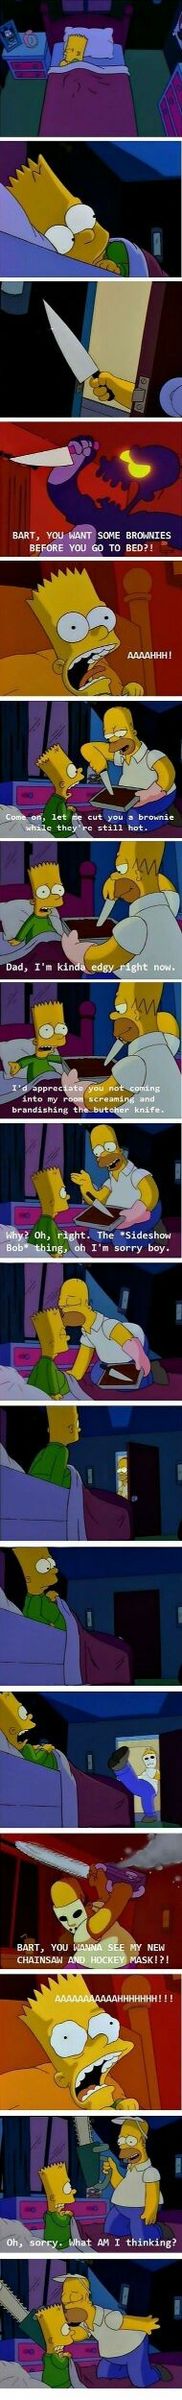 Old Simpsons - meme